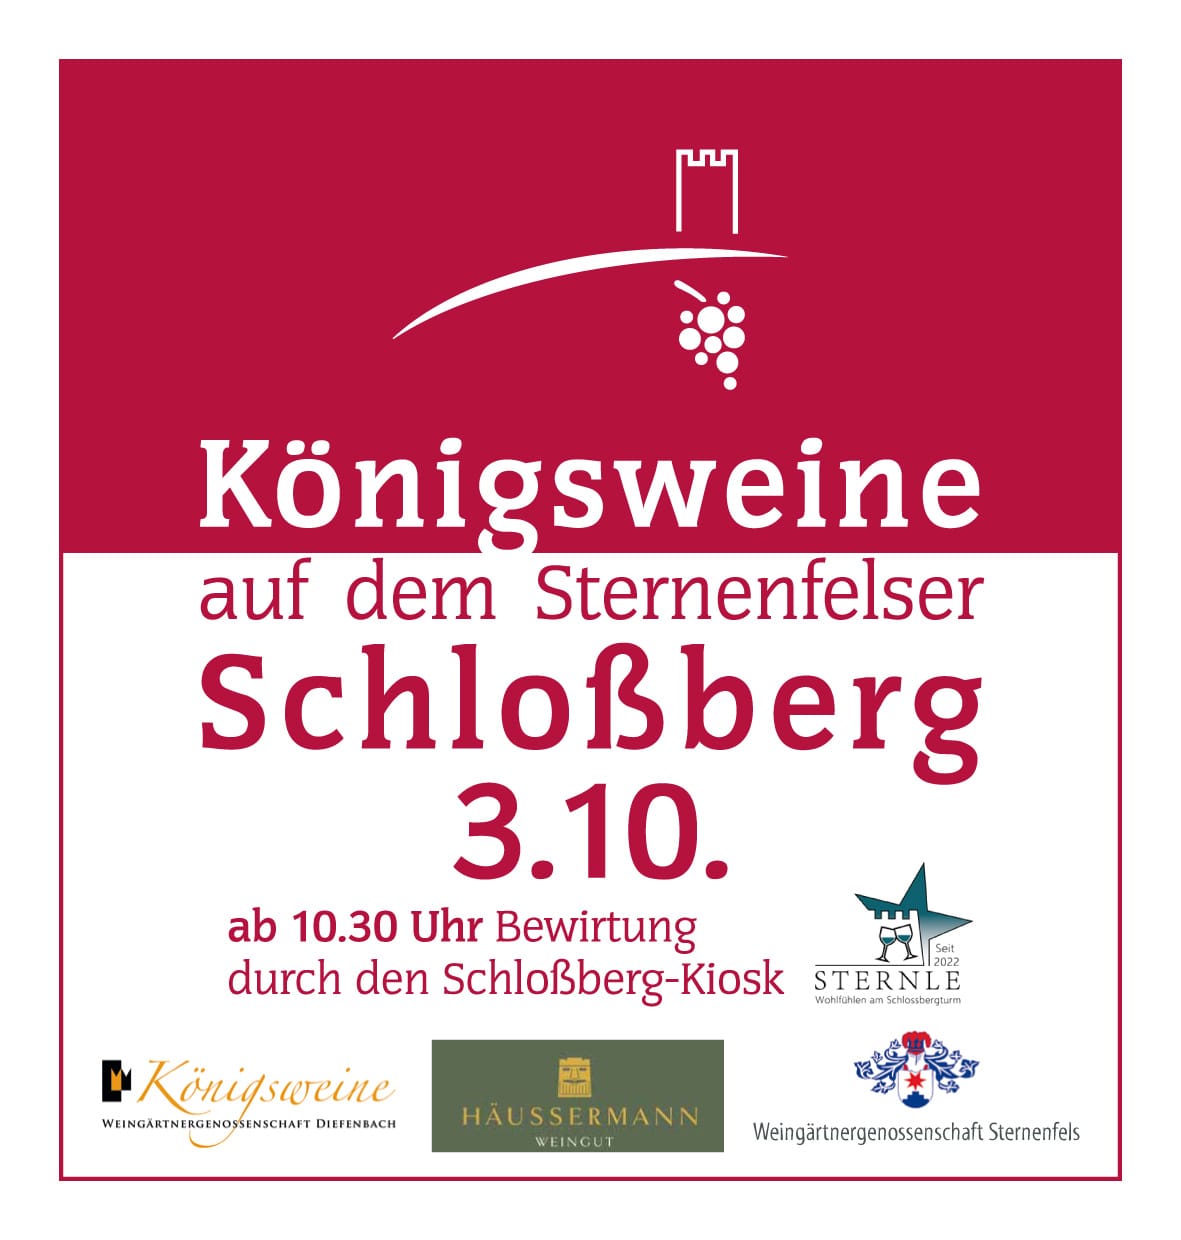 Königsweine auf dem Sternenfelser Schloßberg am 3.10.2022 ab 10.30 Uhr